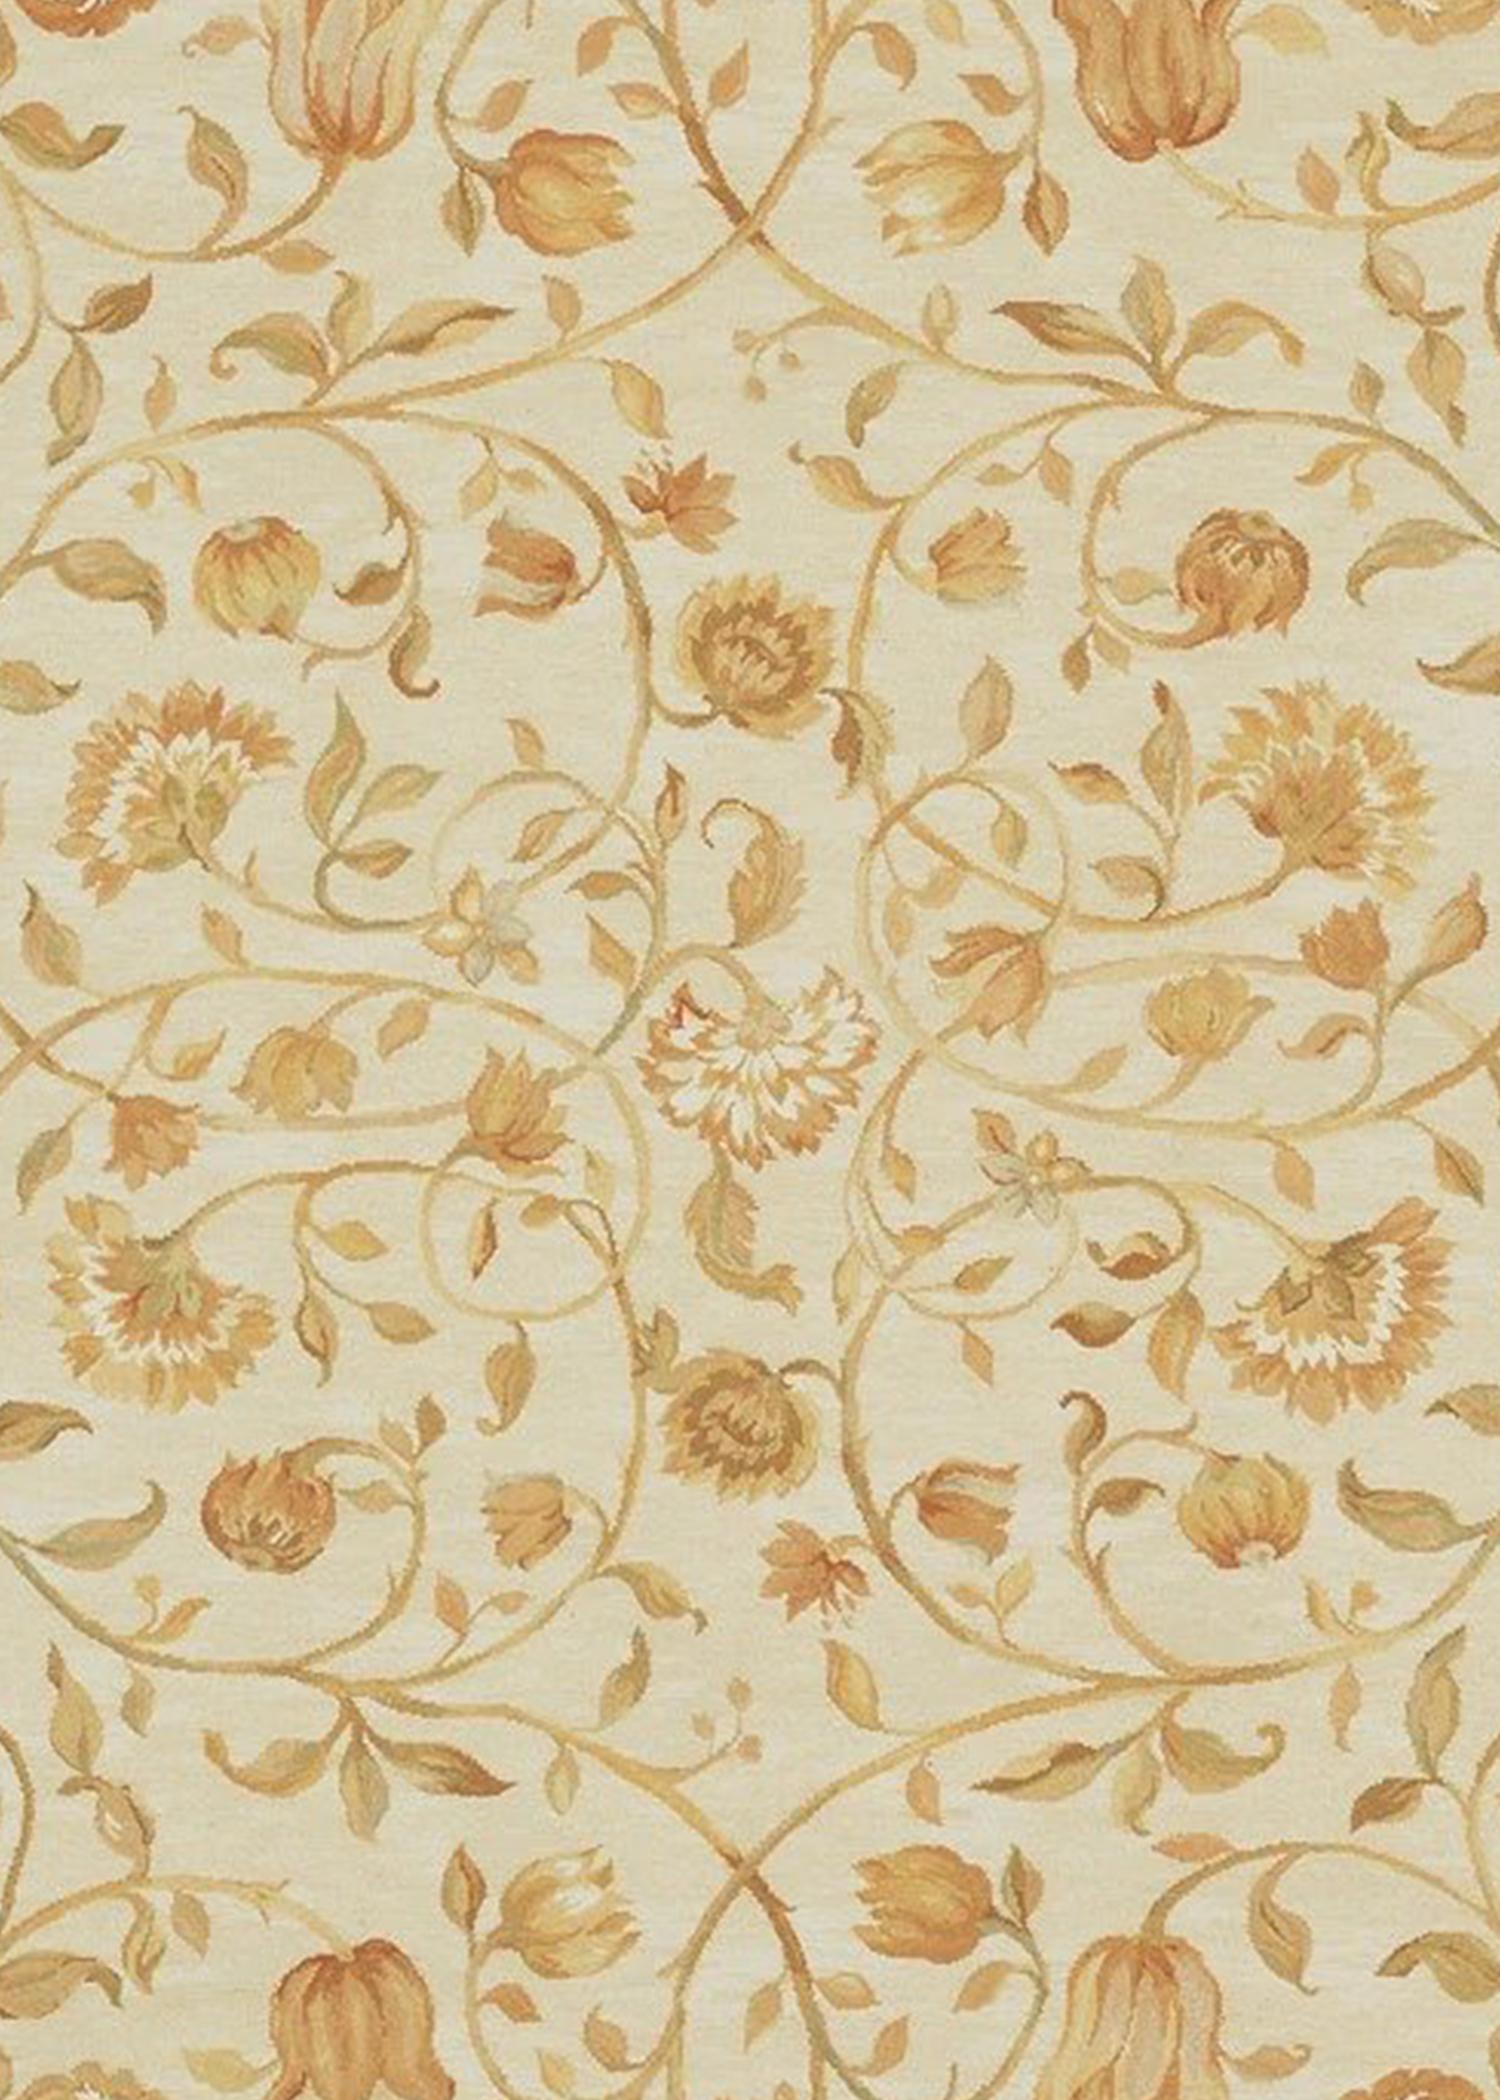 D'après une peinture originale d'Asmara inspirée d'une colline toscane couverte d'oliviers, de cyprès, de fleurs sauvages et de buissons de verge d'or. Ce tapis à poils coupés et bouclés a été fabriqué à la main en combinant un tissage bouclé